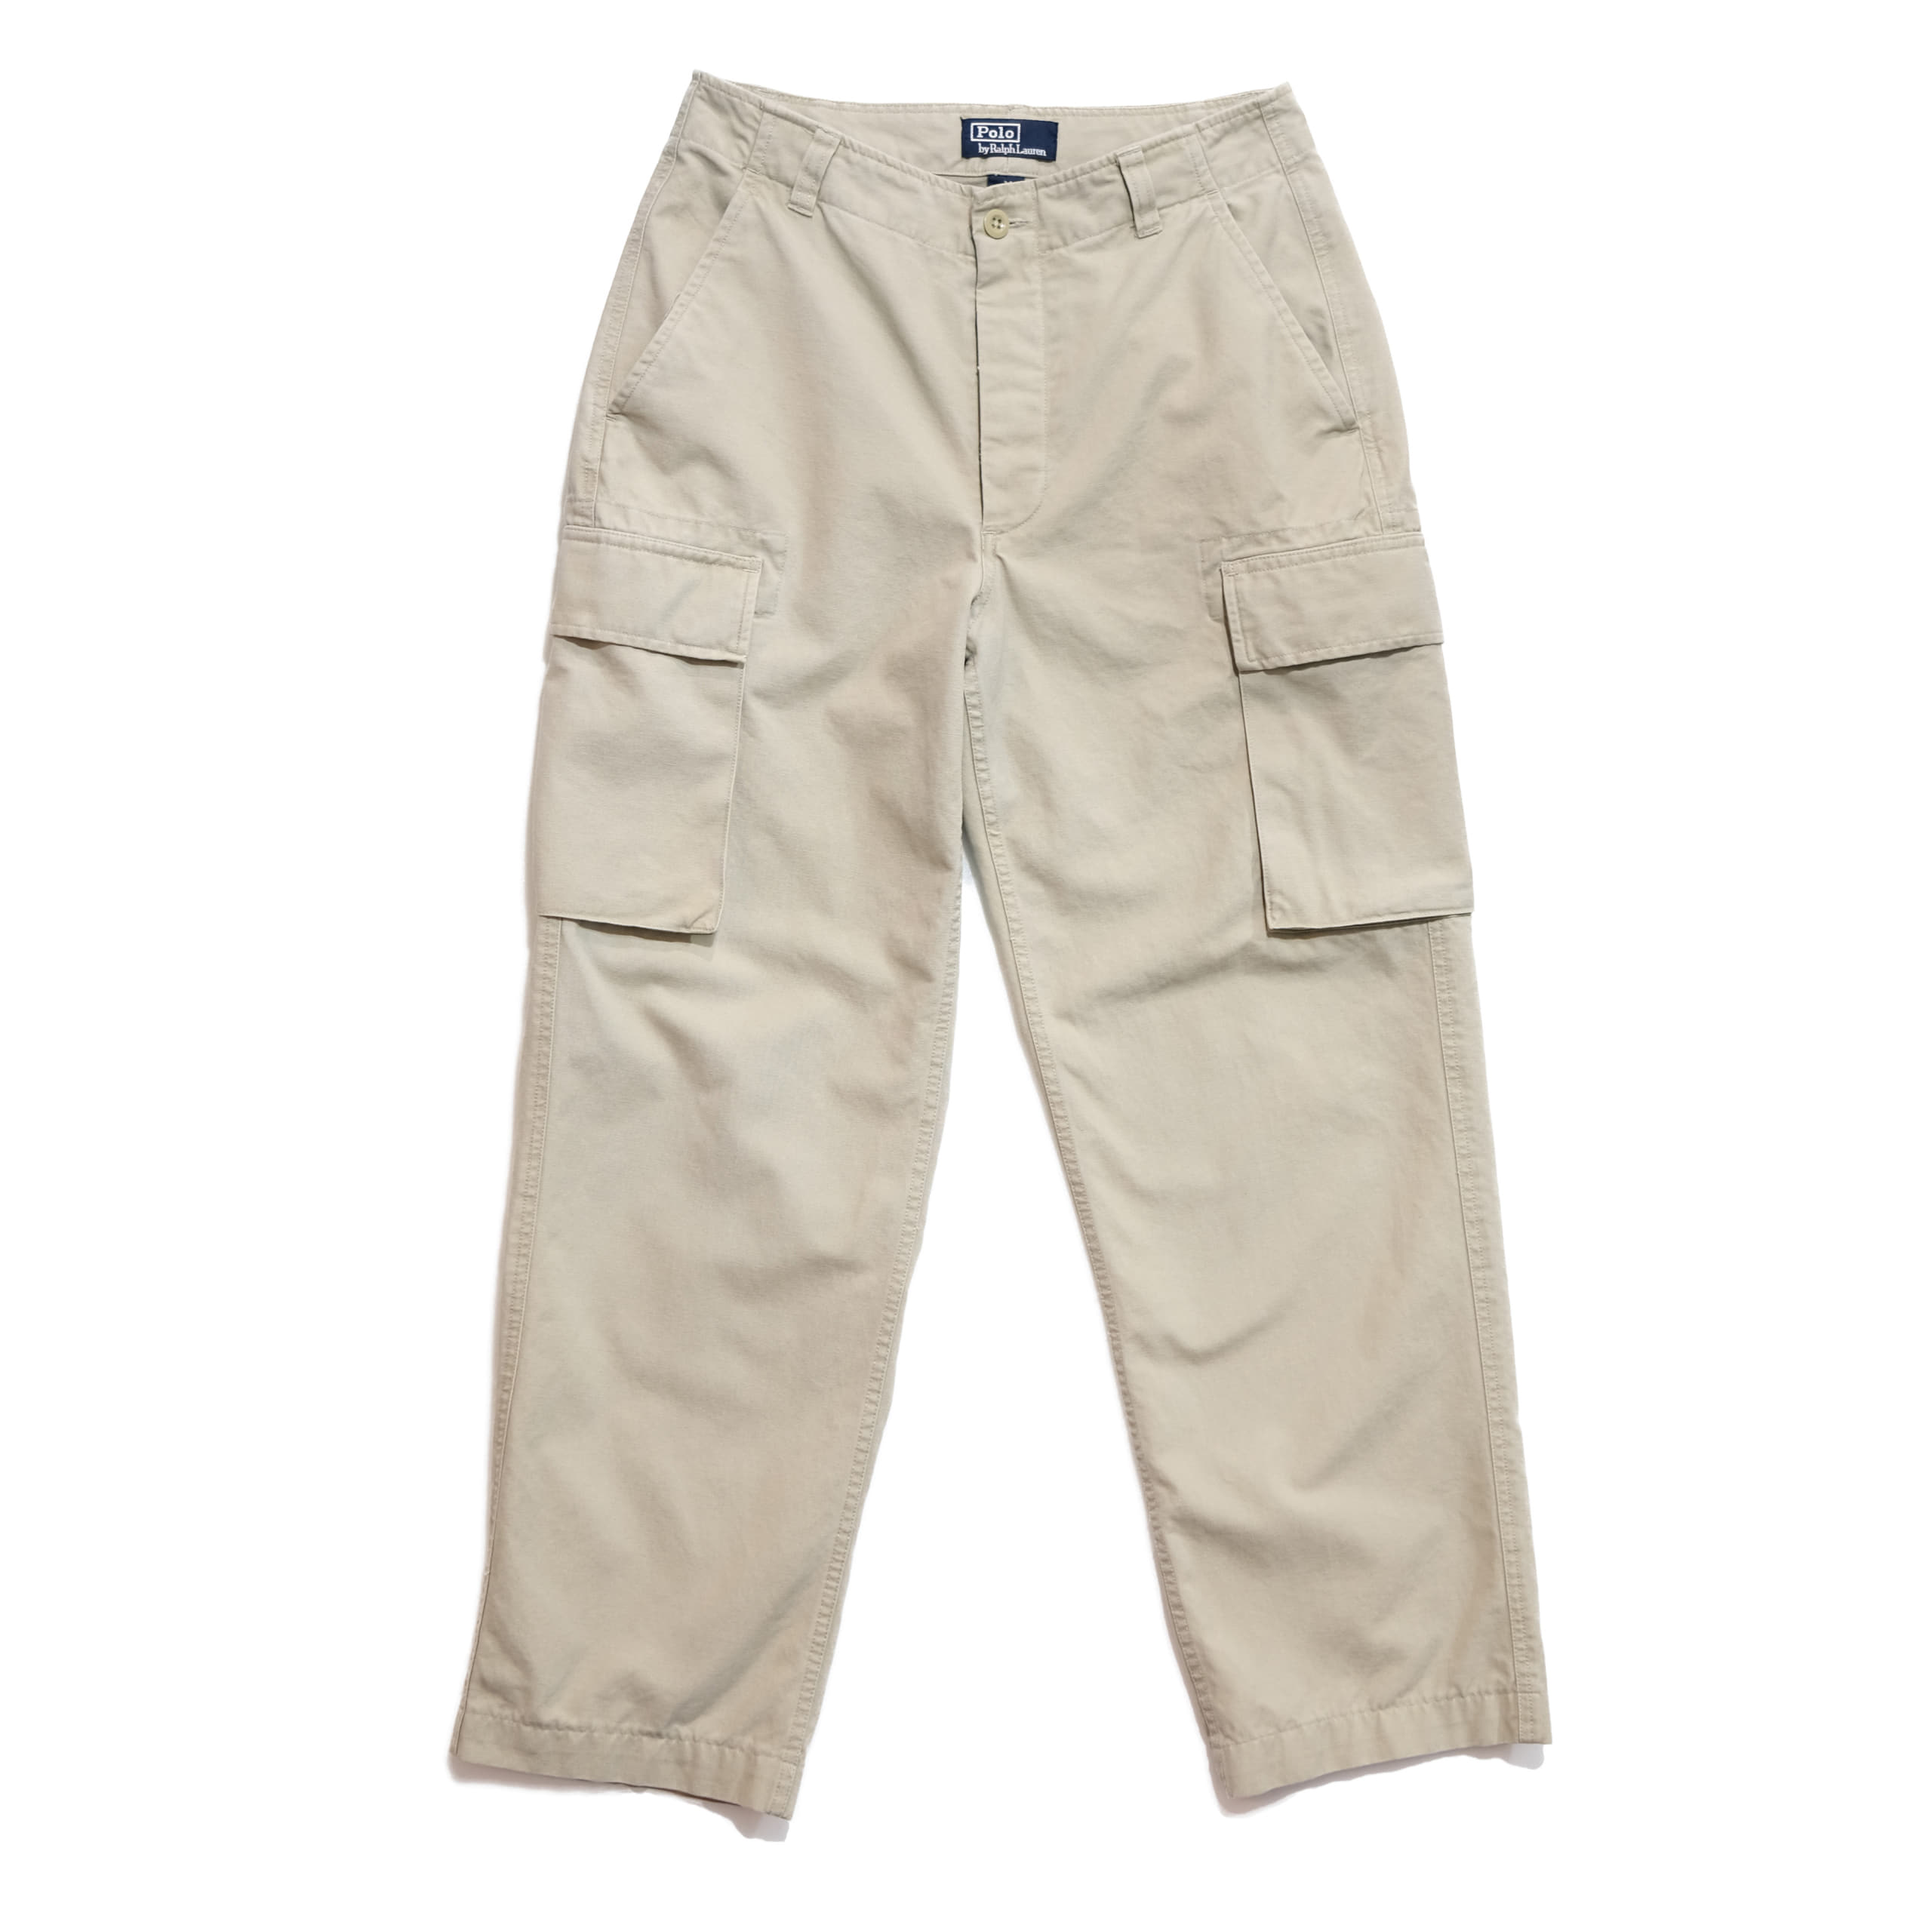 90s Polo Ralph Lauren Cargo Pants